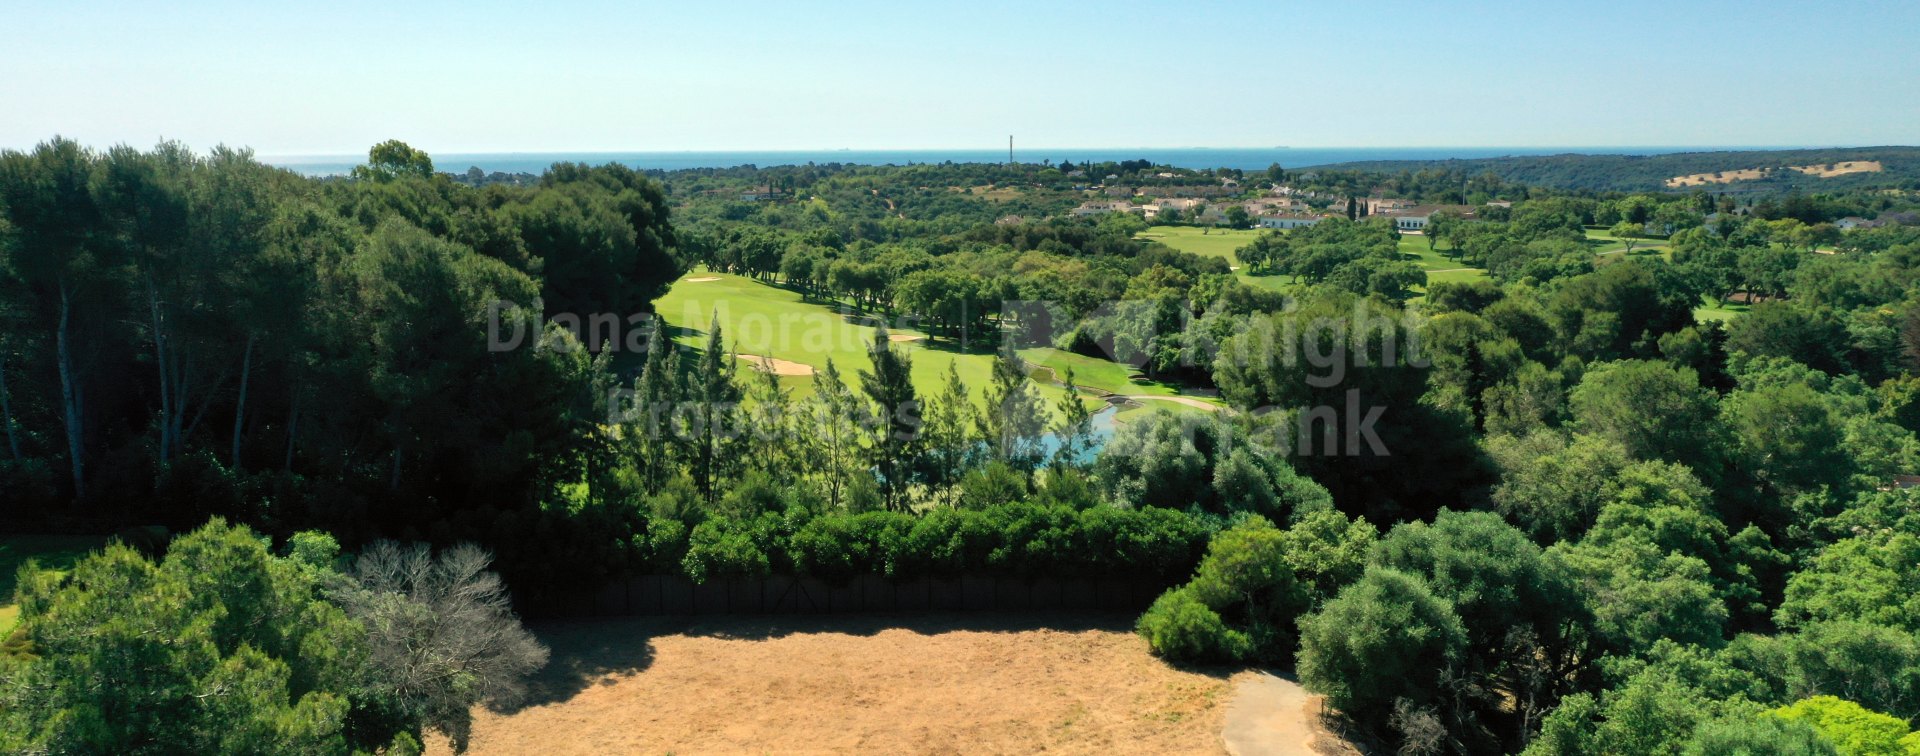 Valderrama Golf, Parcelas en primera línea de golf en venta en Valderrama